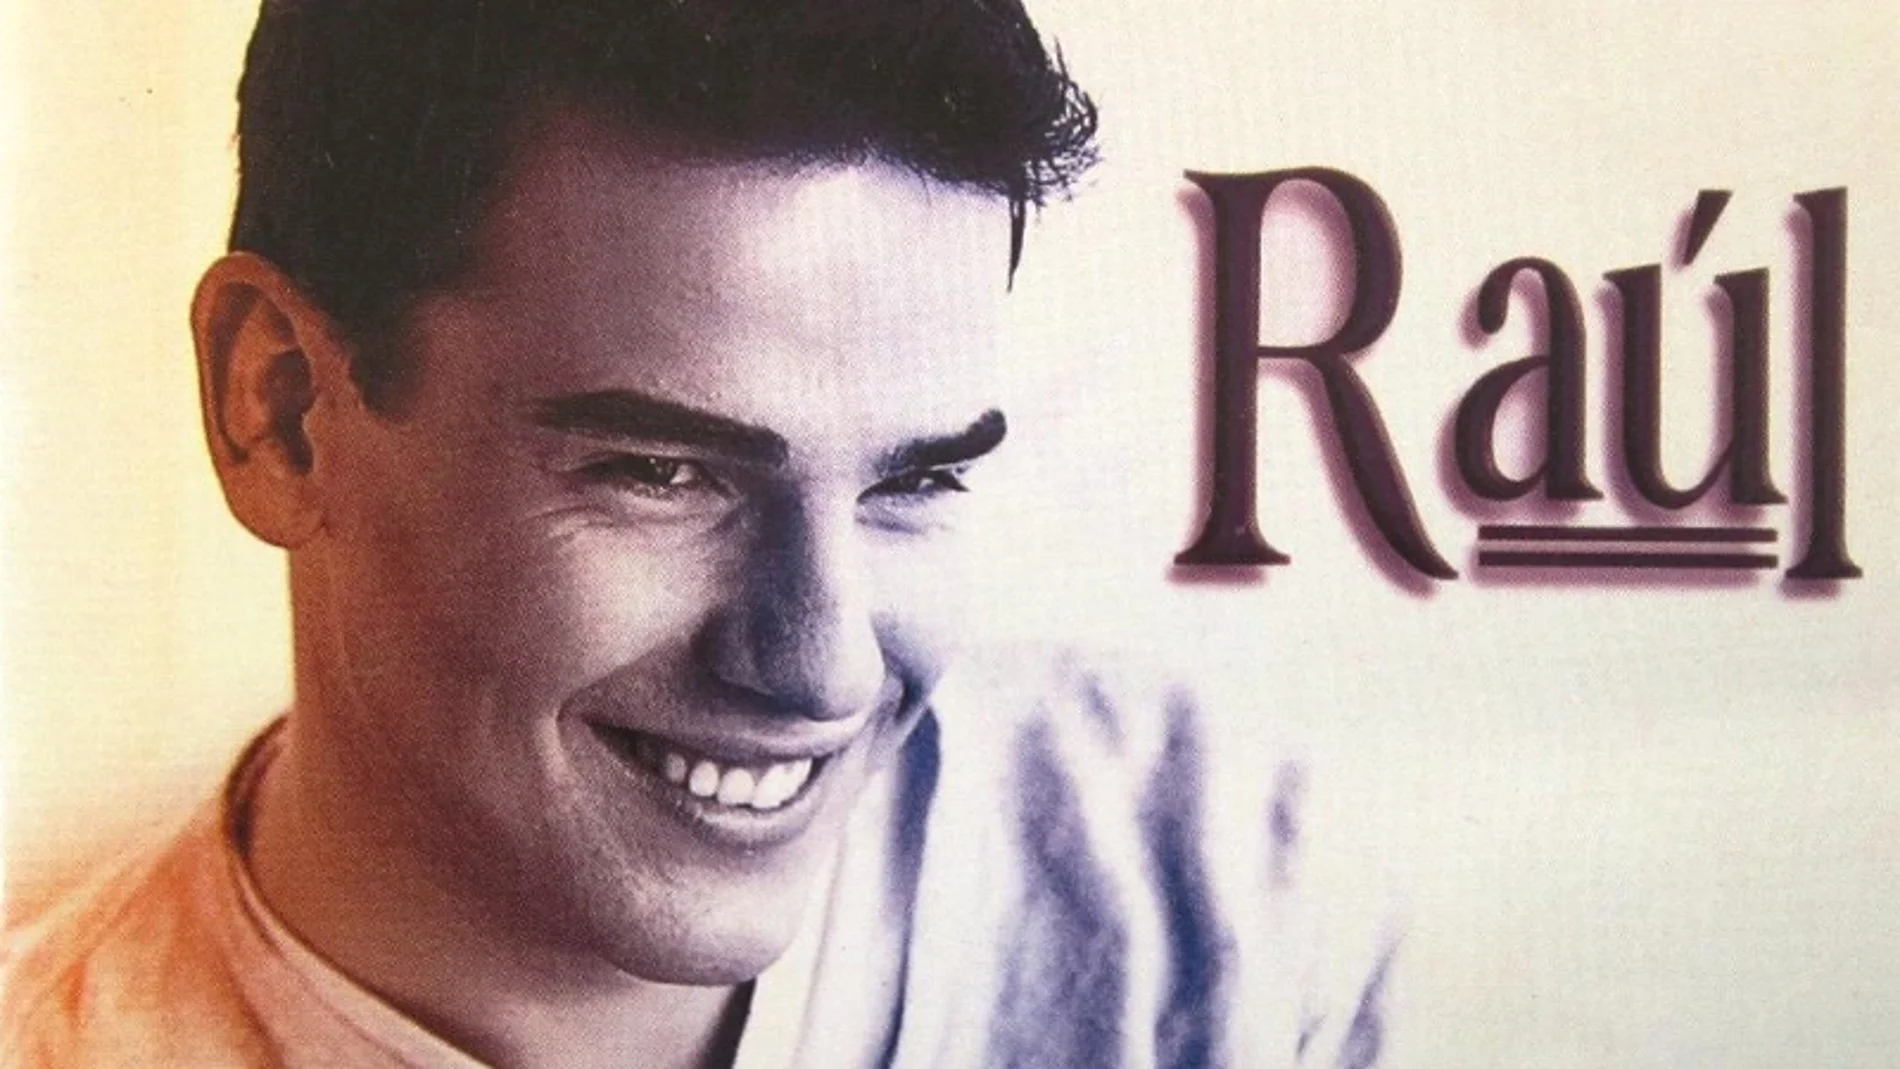 ¿Qué fue de Raúl, el cantante de 'Sueño su boca'?